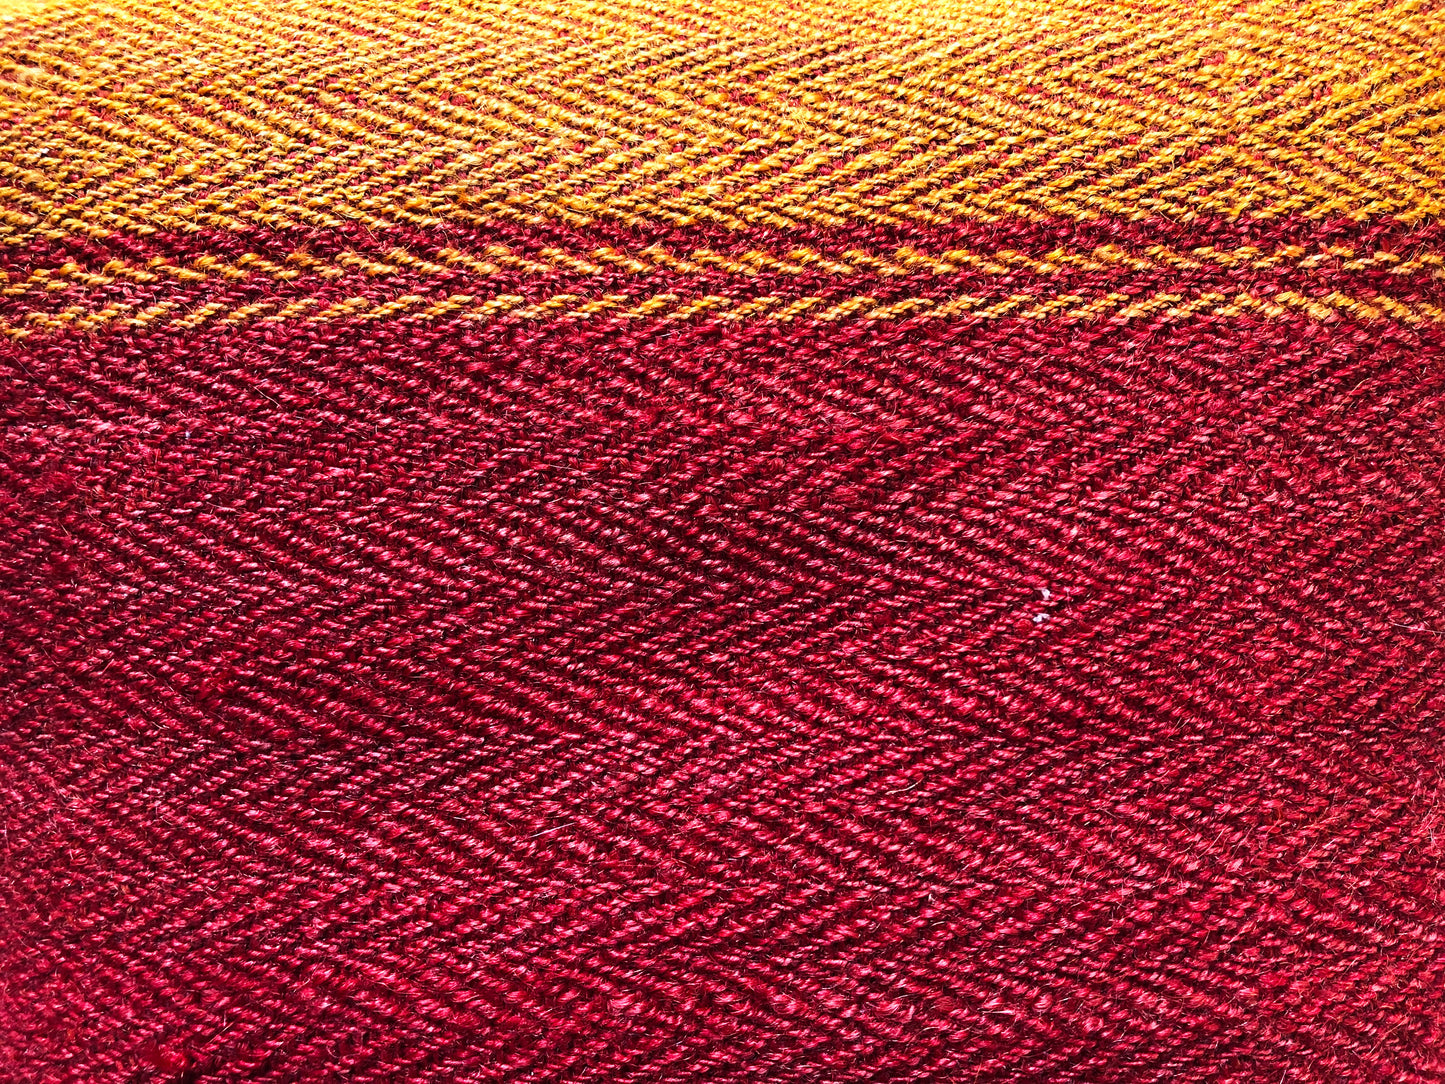 Cuscino in lana realizzato su telaio a mano con fiocchi di cirmolo